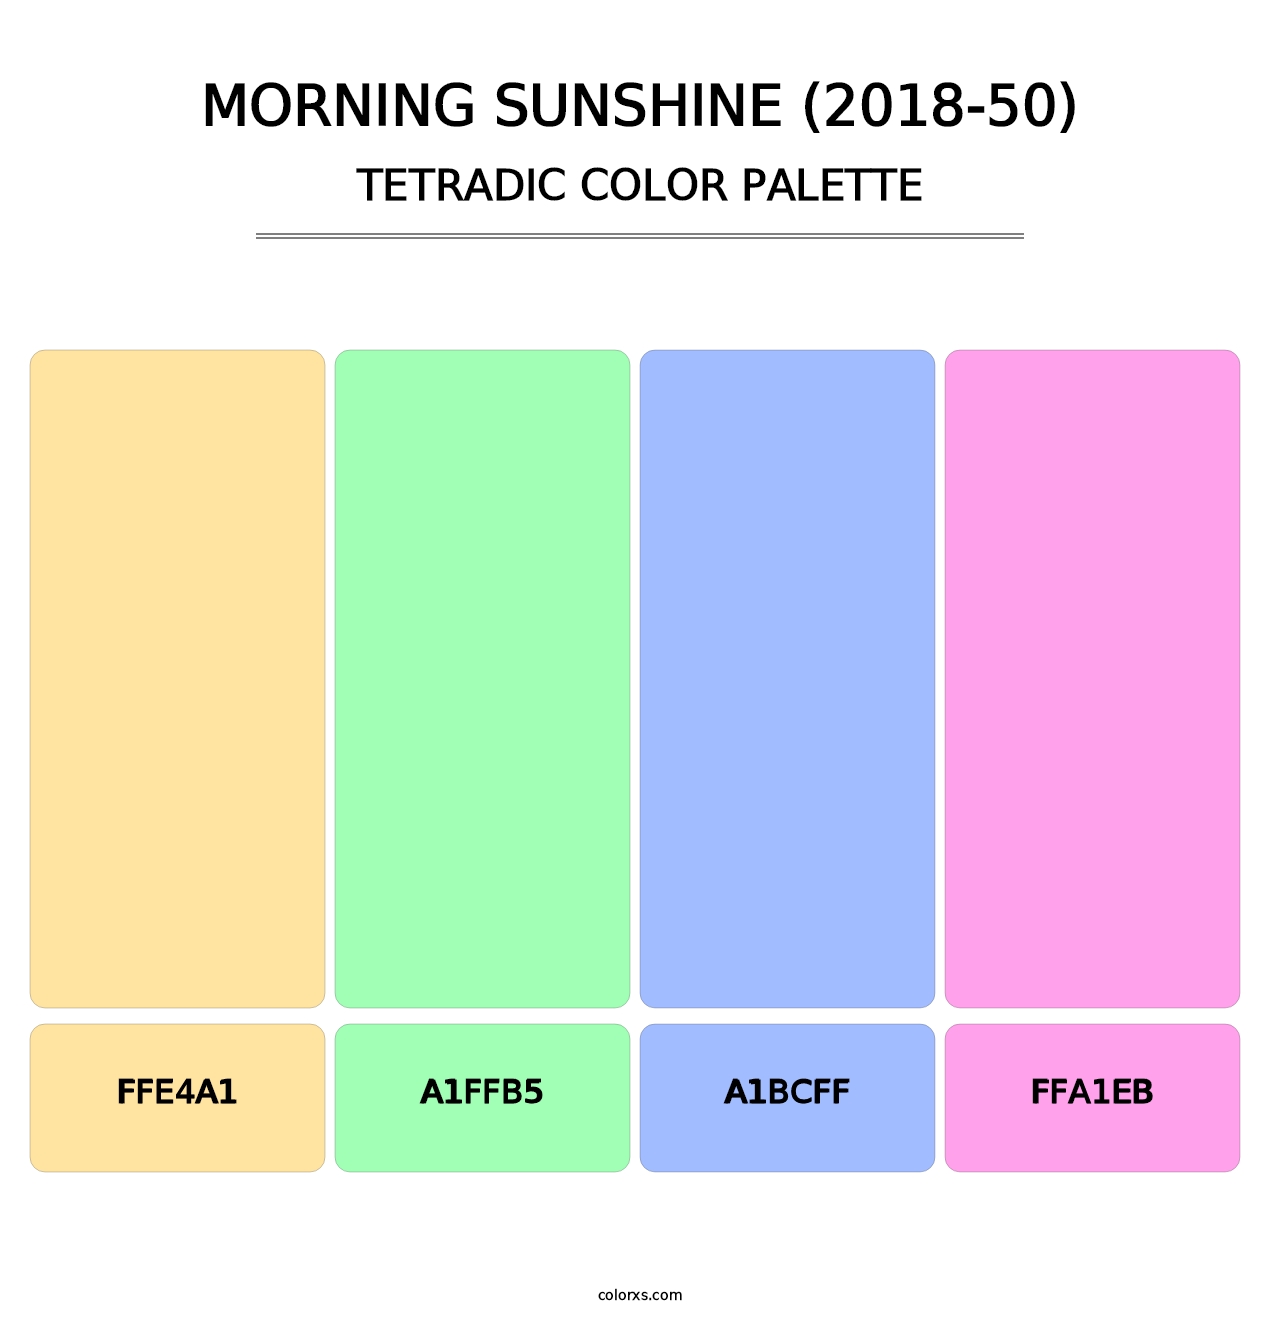 Morning Sunshine (2018-50) - Tetradic Color Palette